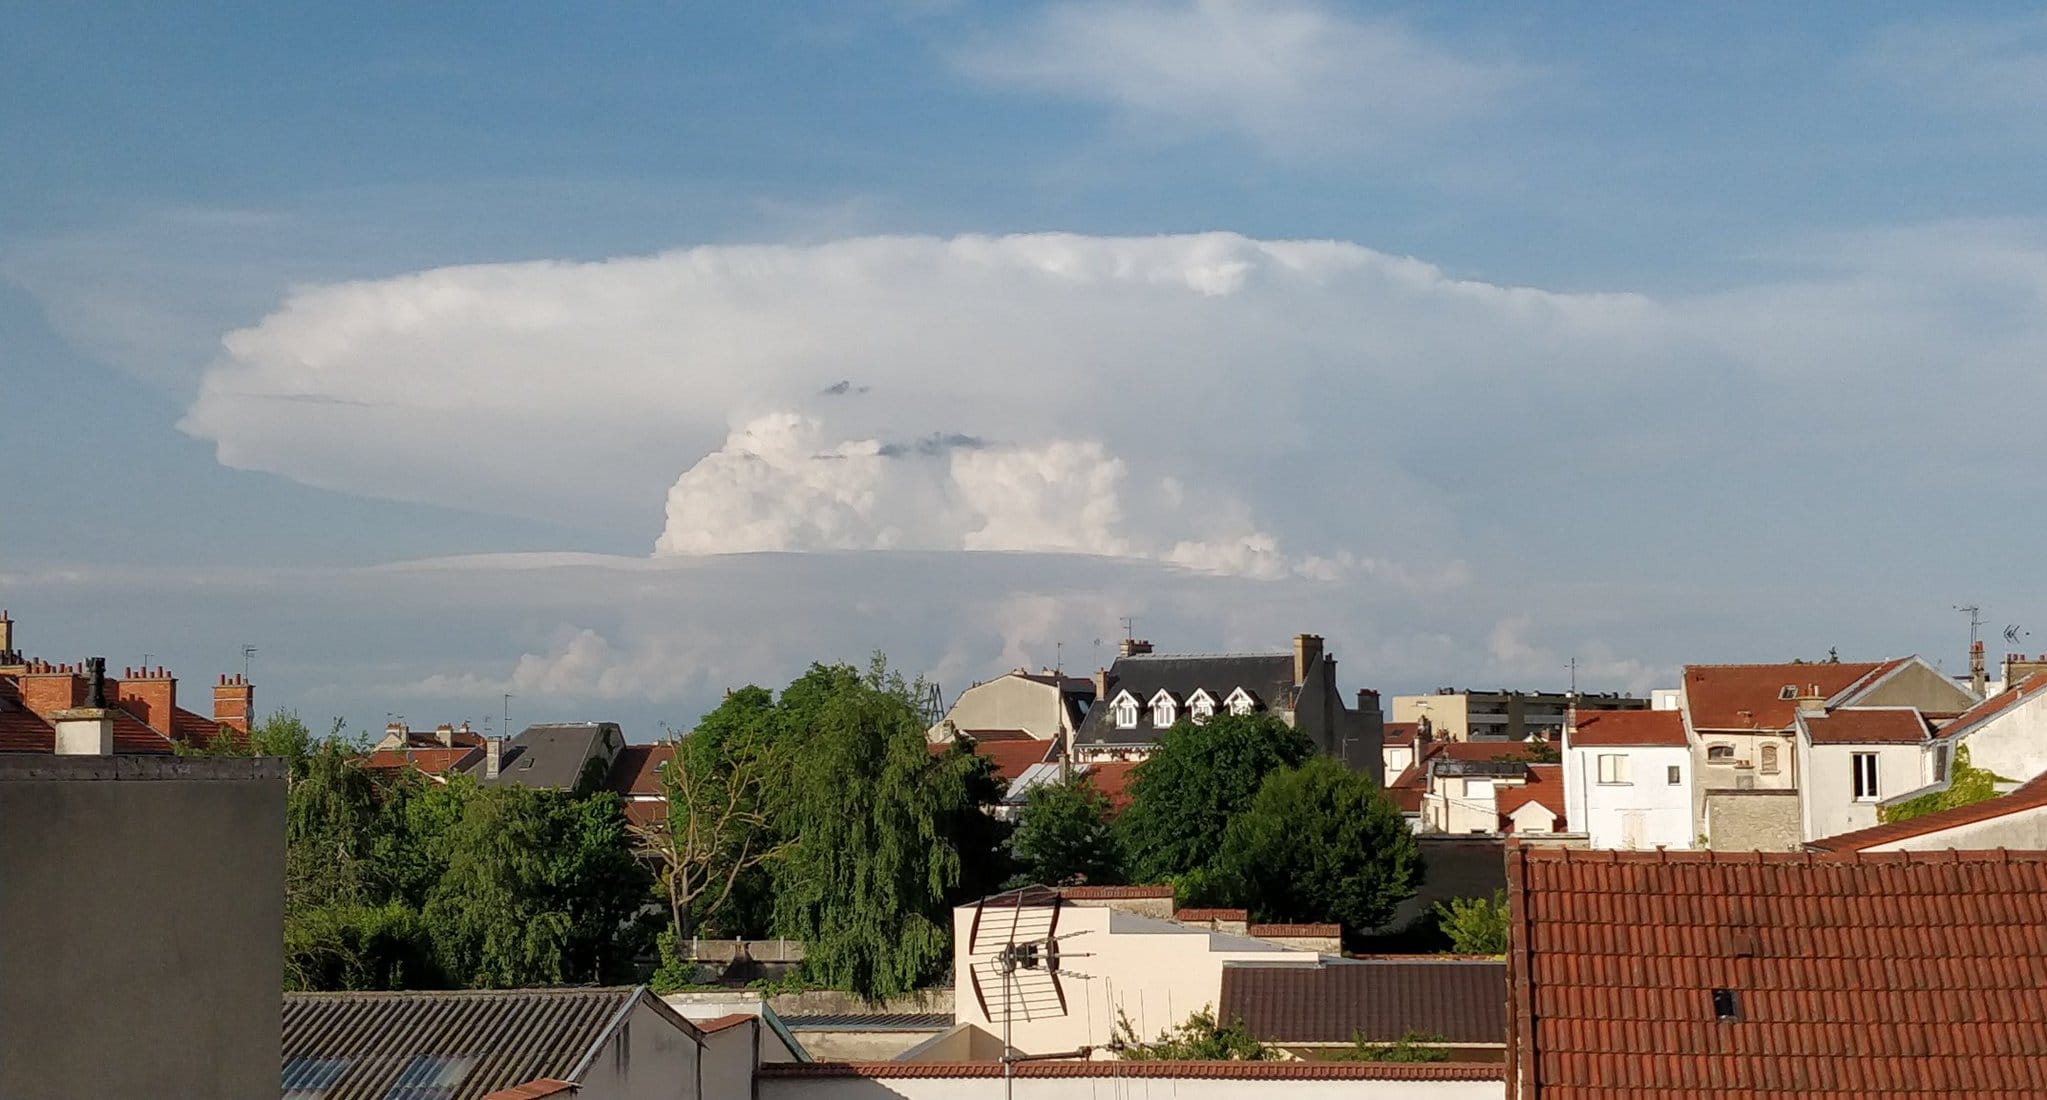 Enclume du cumulonimbus bien visible depuis Reims - 27/05/2018 19:15 - Fabien Gdz